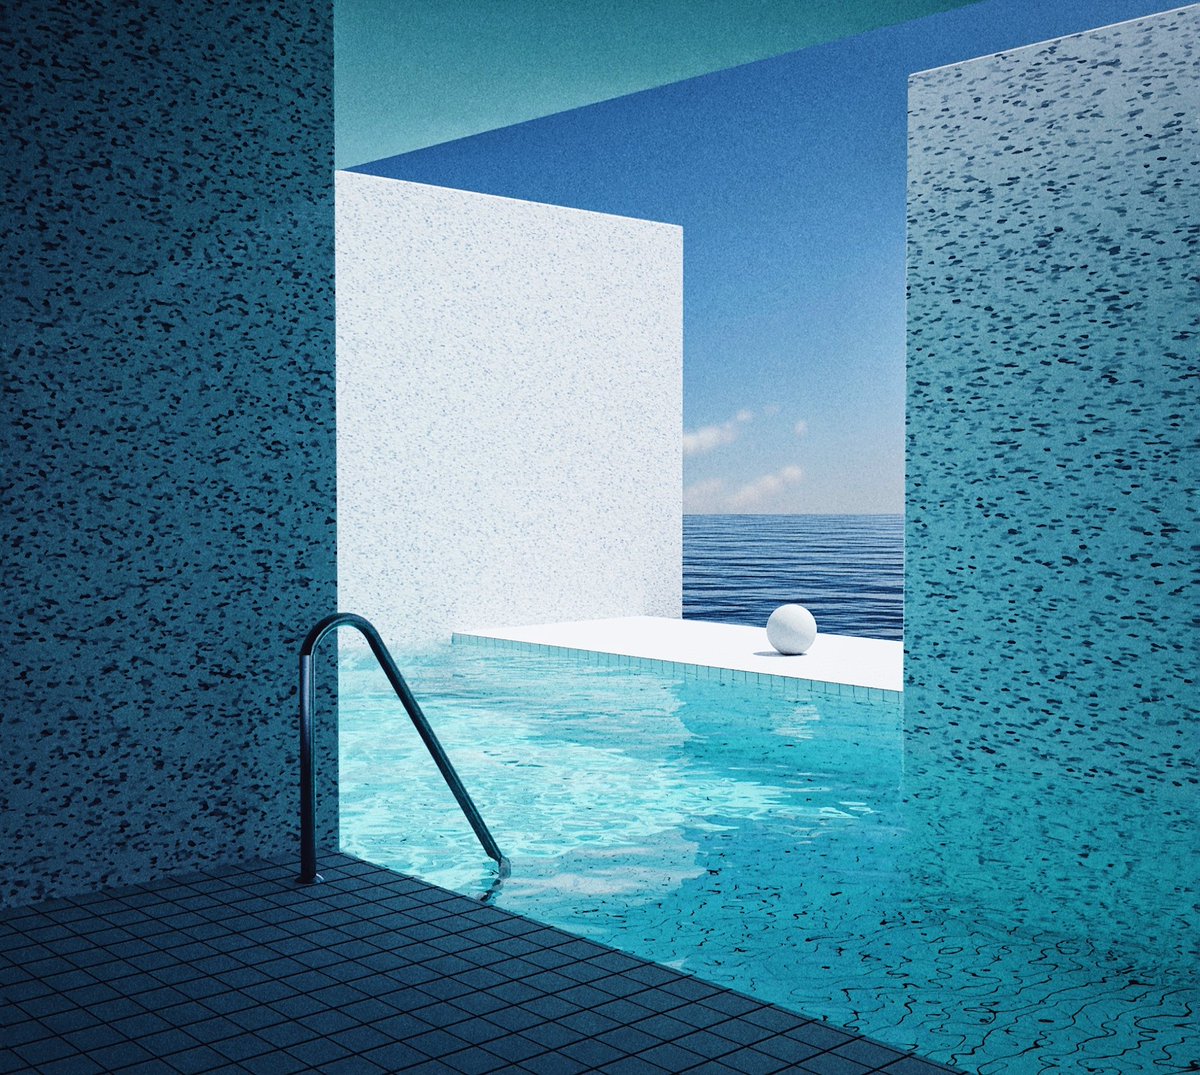 #vaporwave #liminalspace #dreamcore #poolcore #architecture